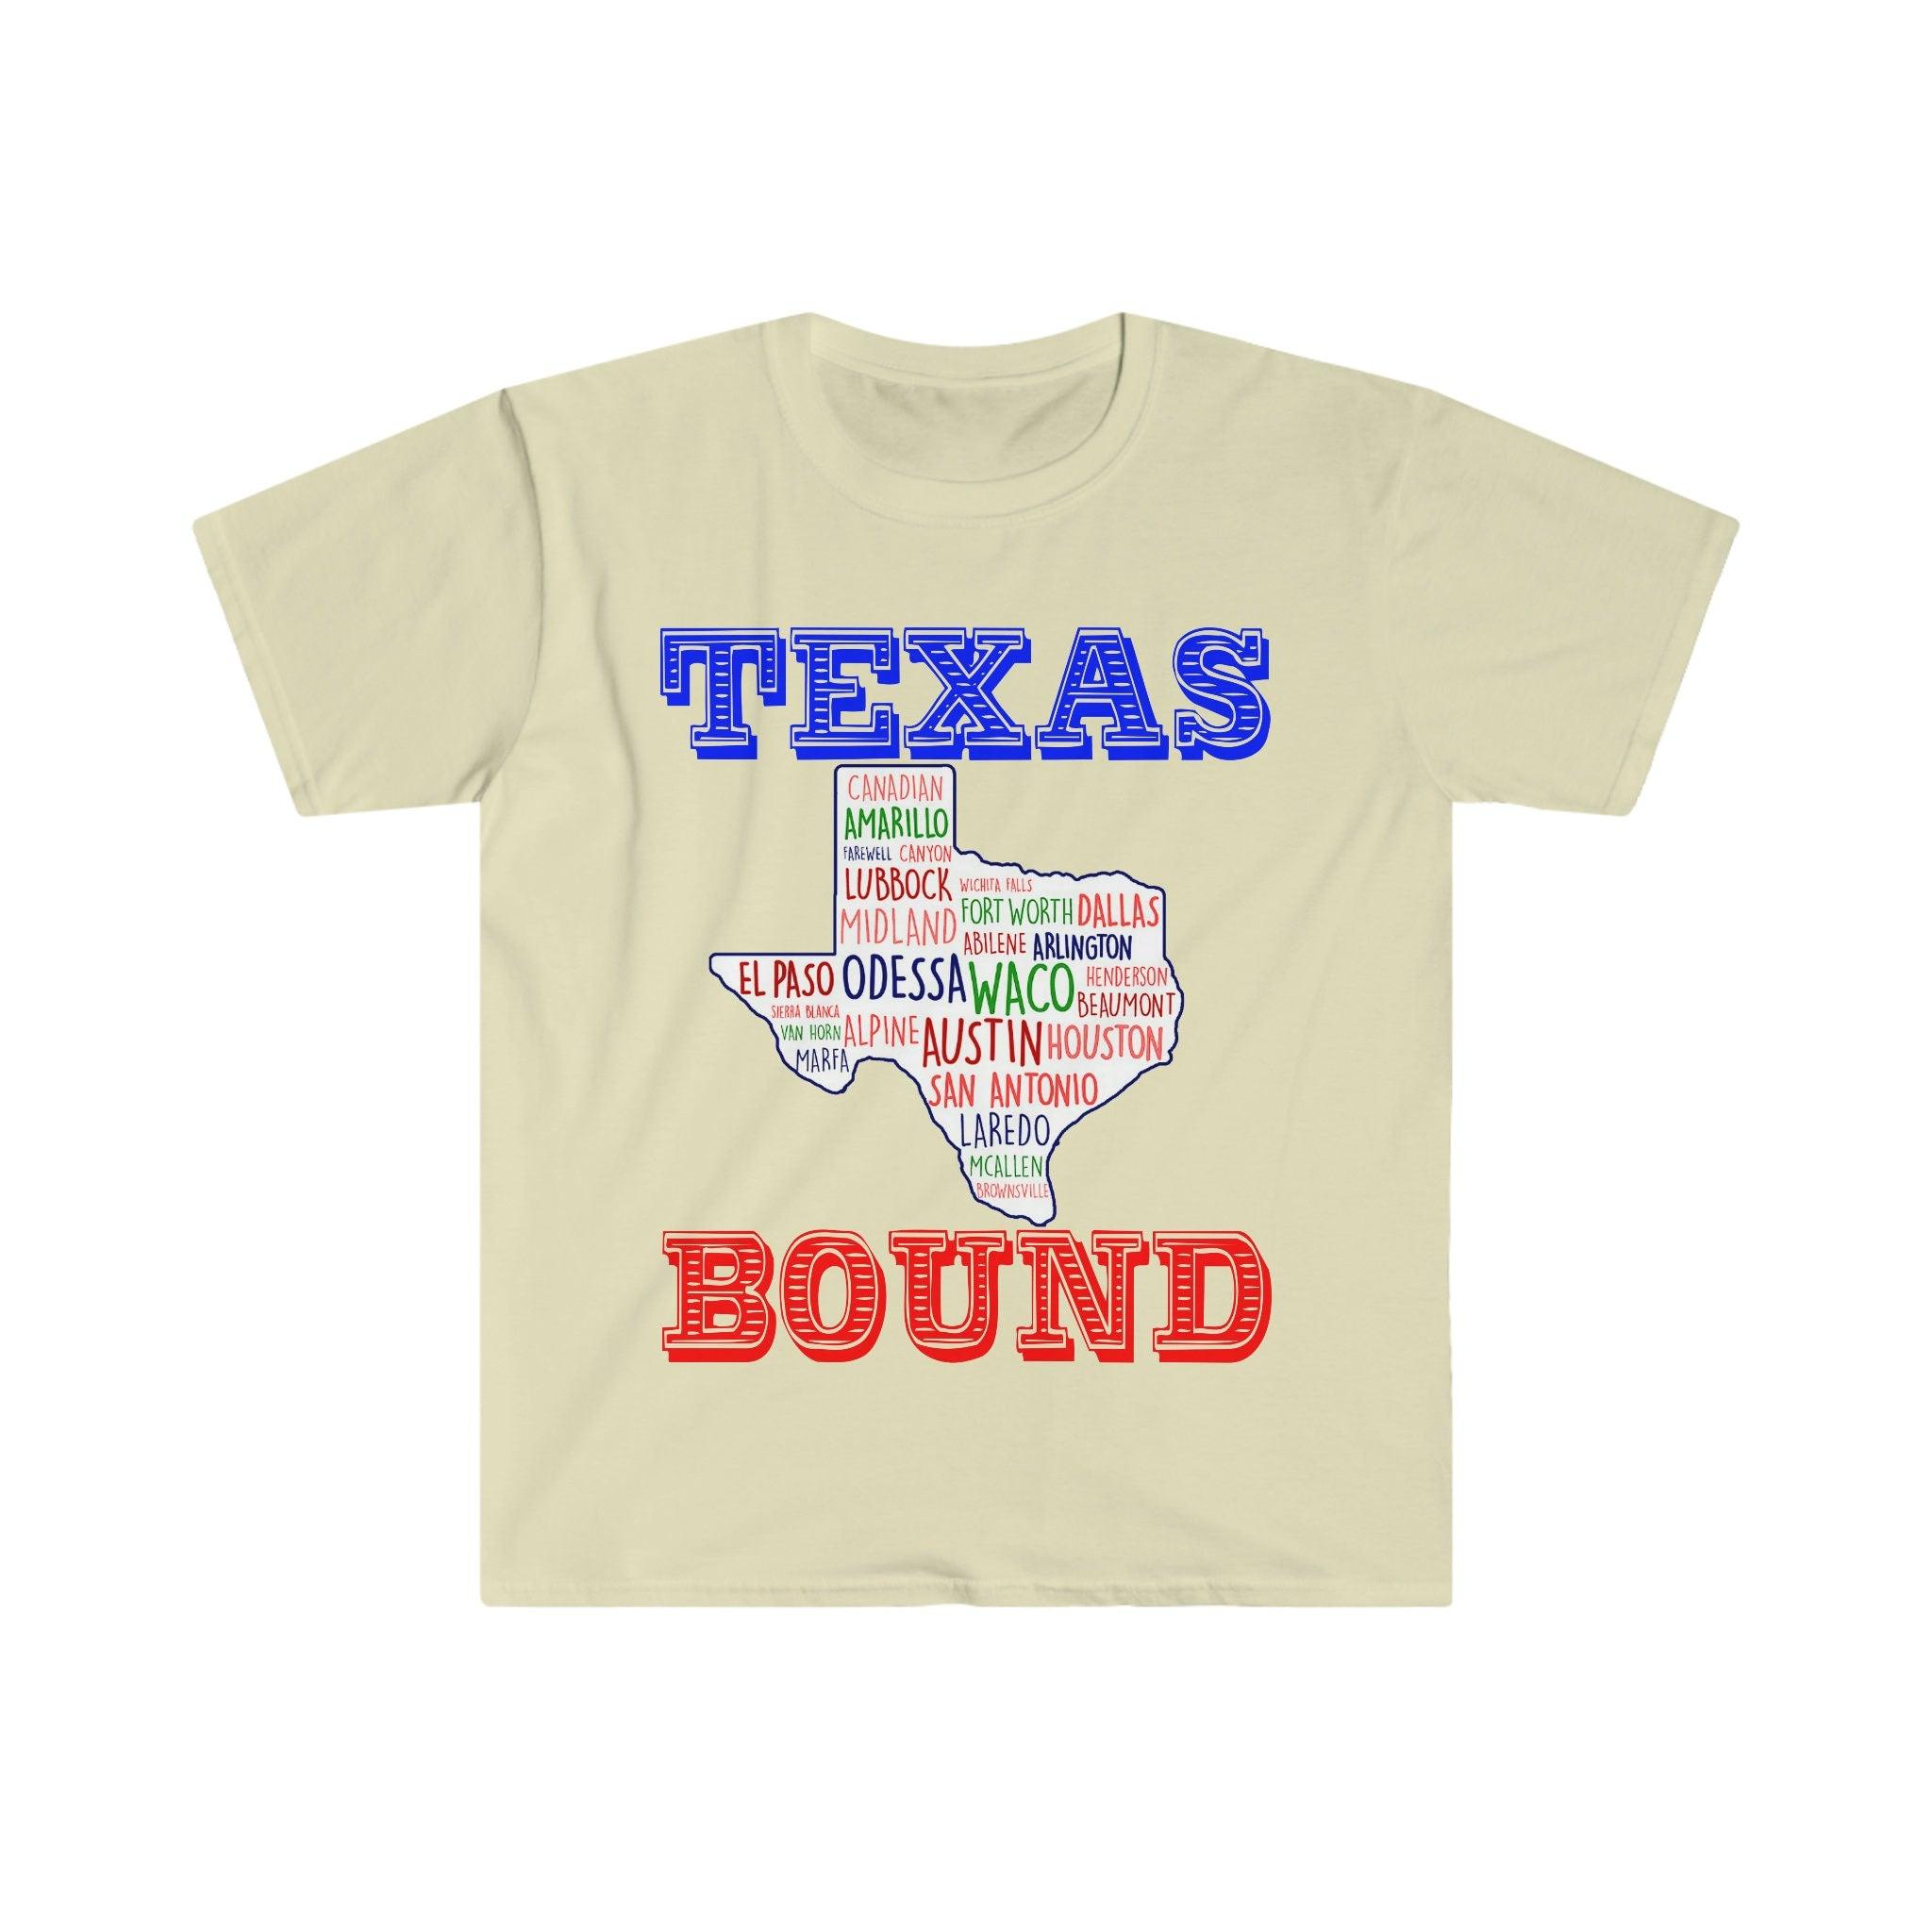 Texas Bound | „Texas Places“ marškinėliai | Teksaso žemėlapio marškinėliai, persikėlimas į Ostiną , Sveiki atvykę į Texas Gift, Texas Bound, Nauja Teksase, Perėjimas prie DFW Beat Biden mokesčių padidinimas, Biden mokesčių planas, pakrantės liberalas, Hiustonas, persikėlimas į Ostiną, persikėlimas į DFW, Moving To Texas, Moving to Texas Mug, New in Texas, Respublikonų, Tee, Tees, Texas bound, Texas Girl, Teksaso respublikonų in - plusminusco.com